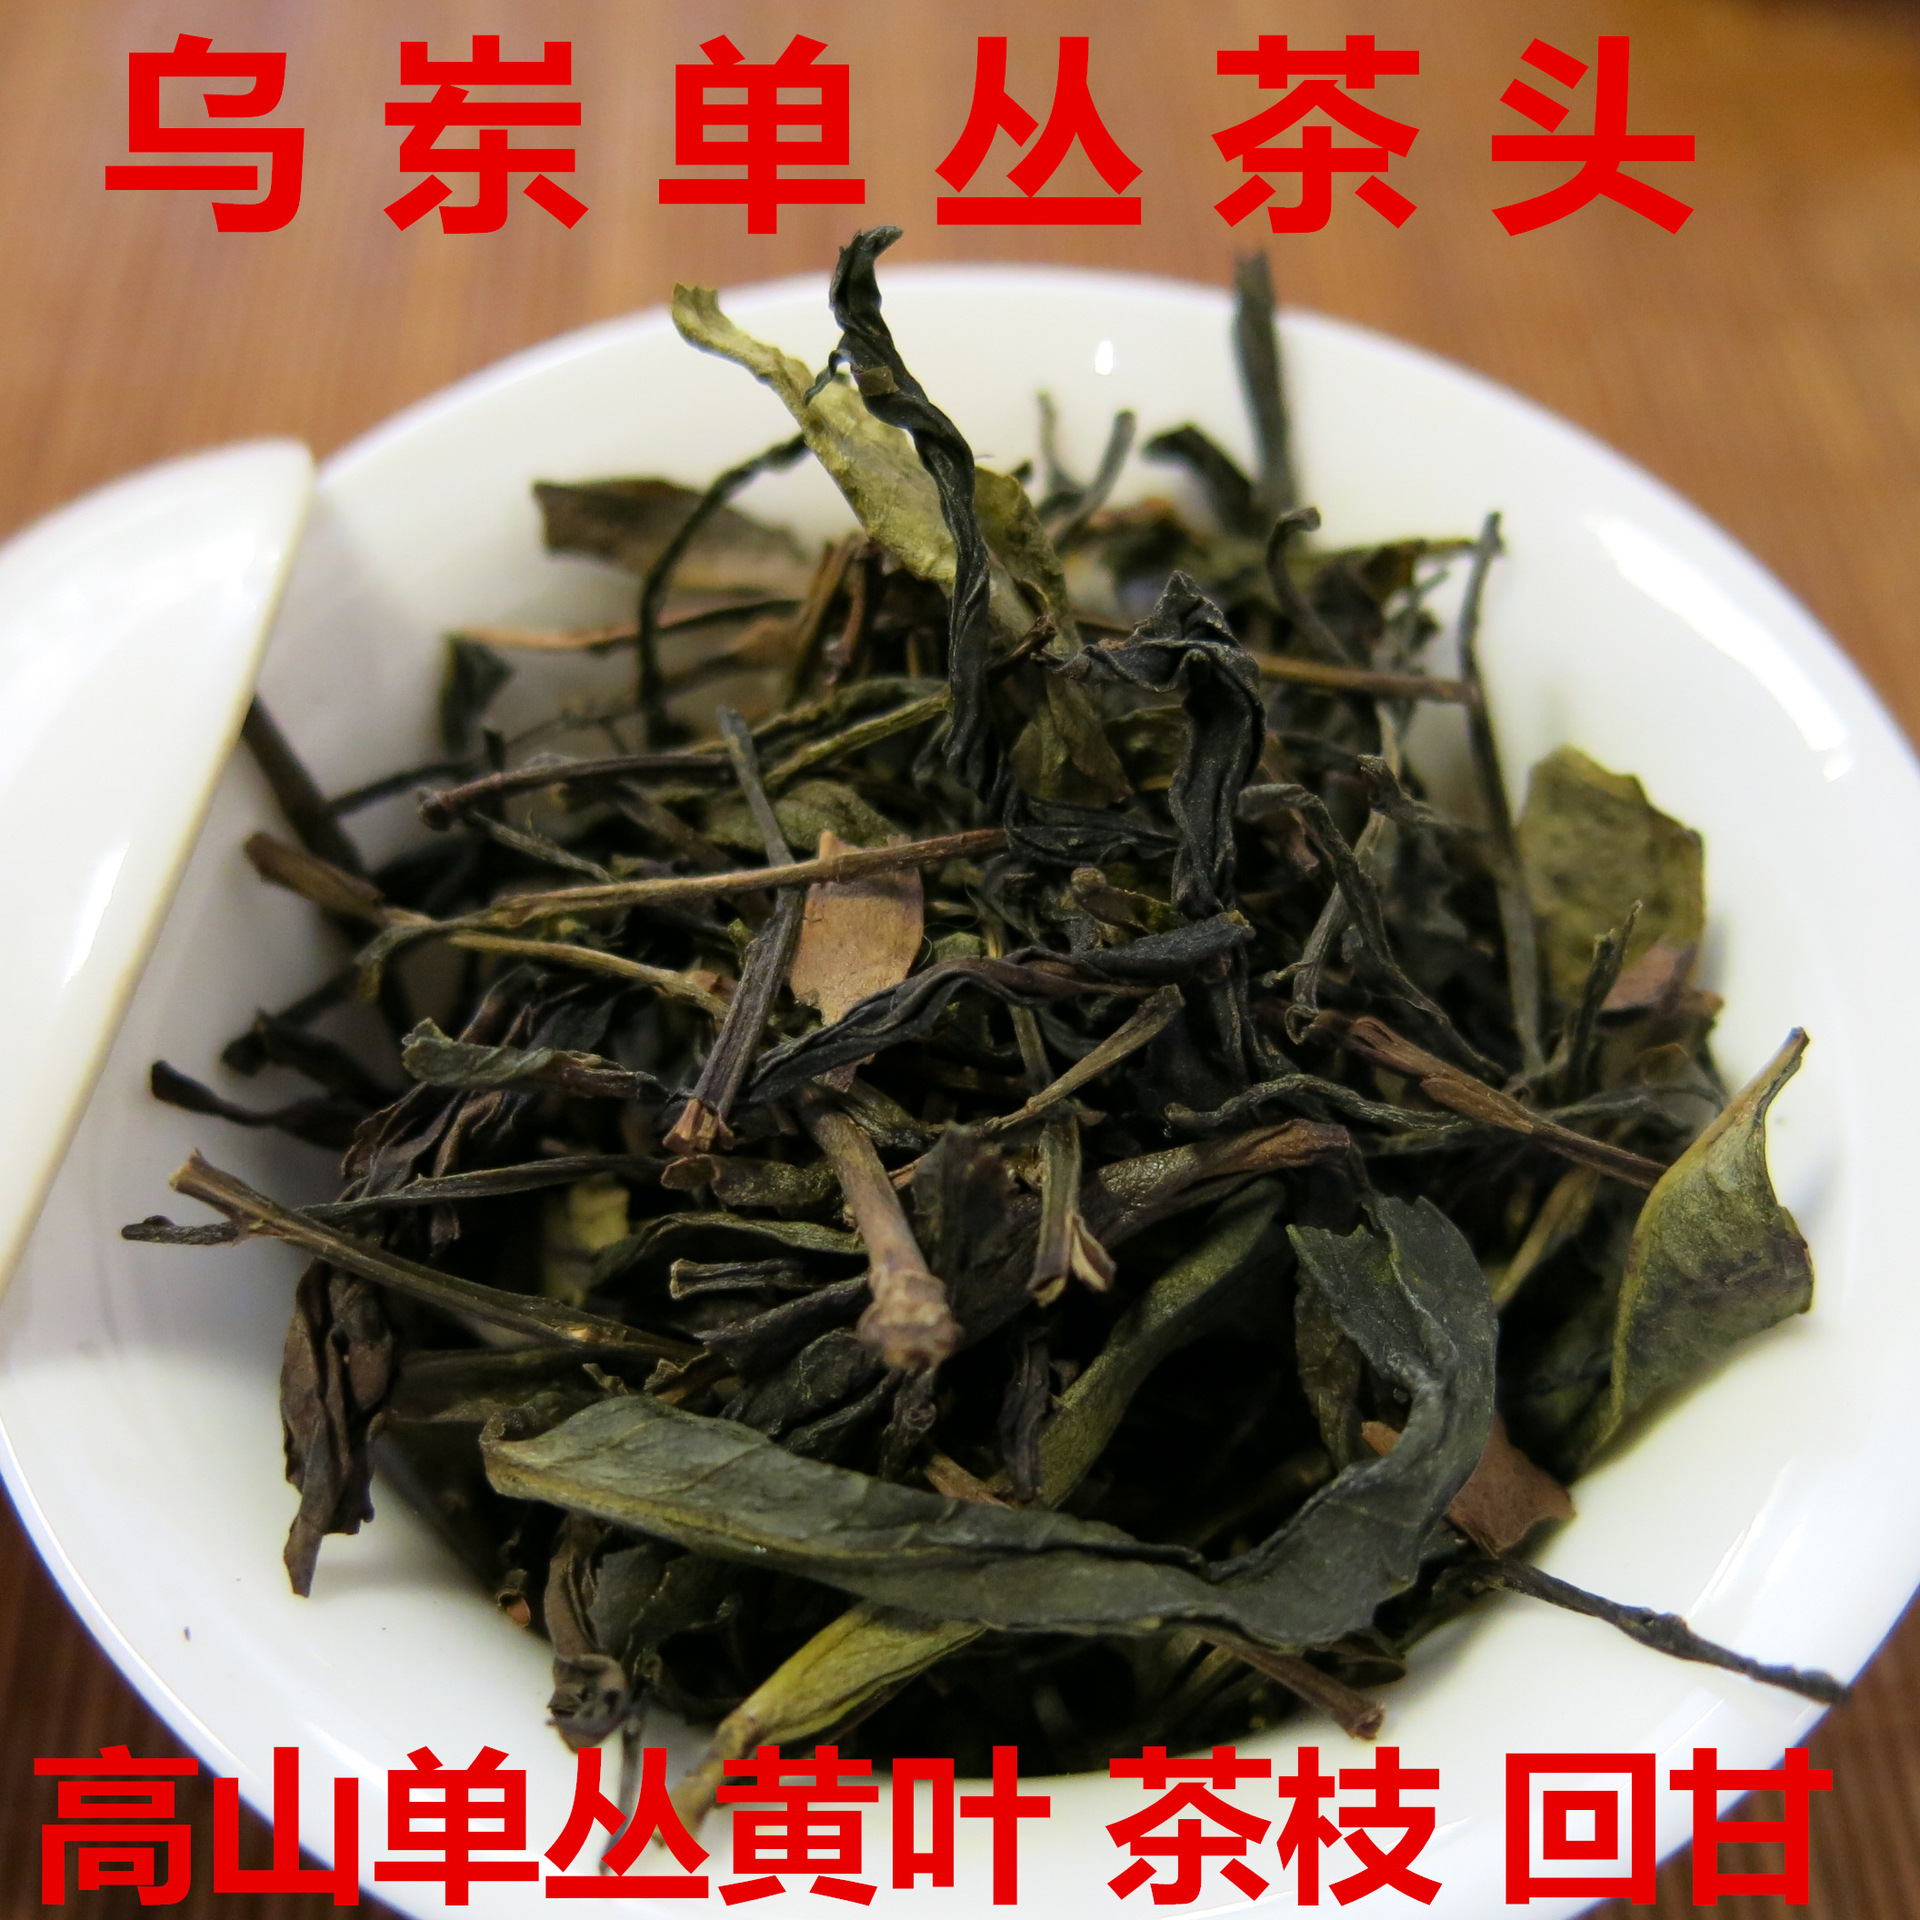 凤凰单枞茶头商用鸭屎香柠檬茶奶茶原料乌龙茶饮料原料批发